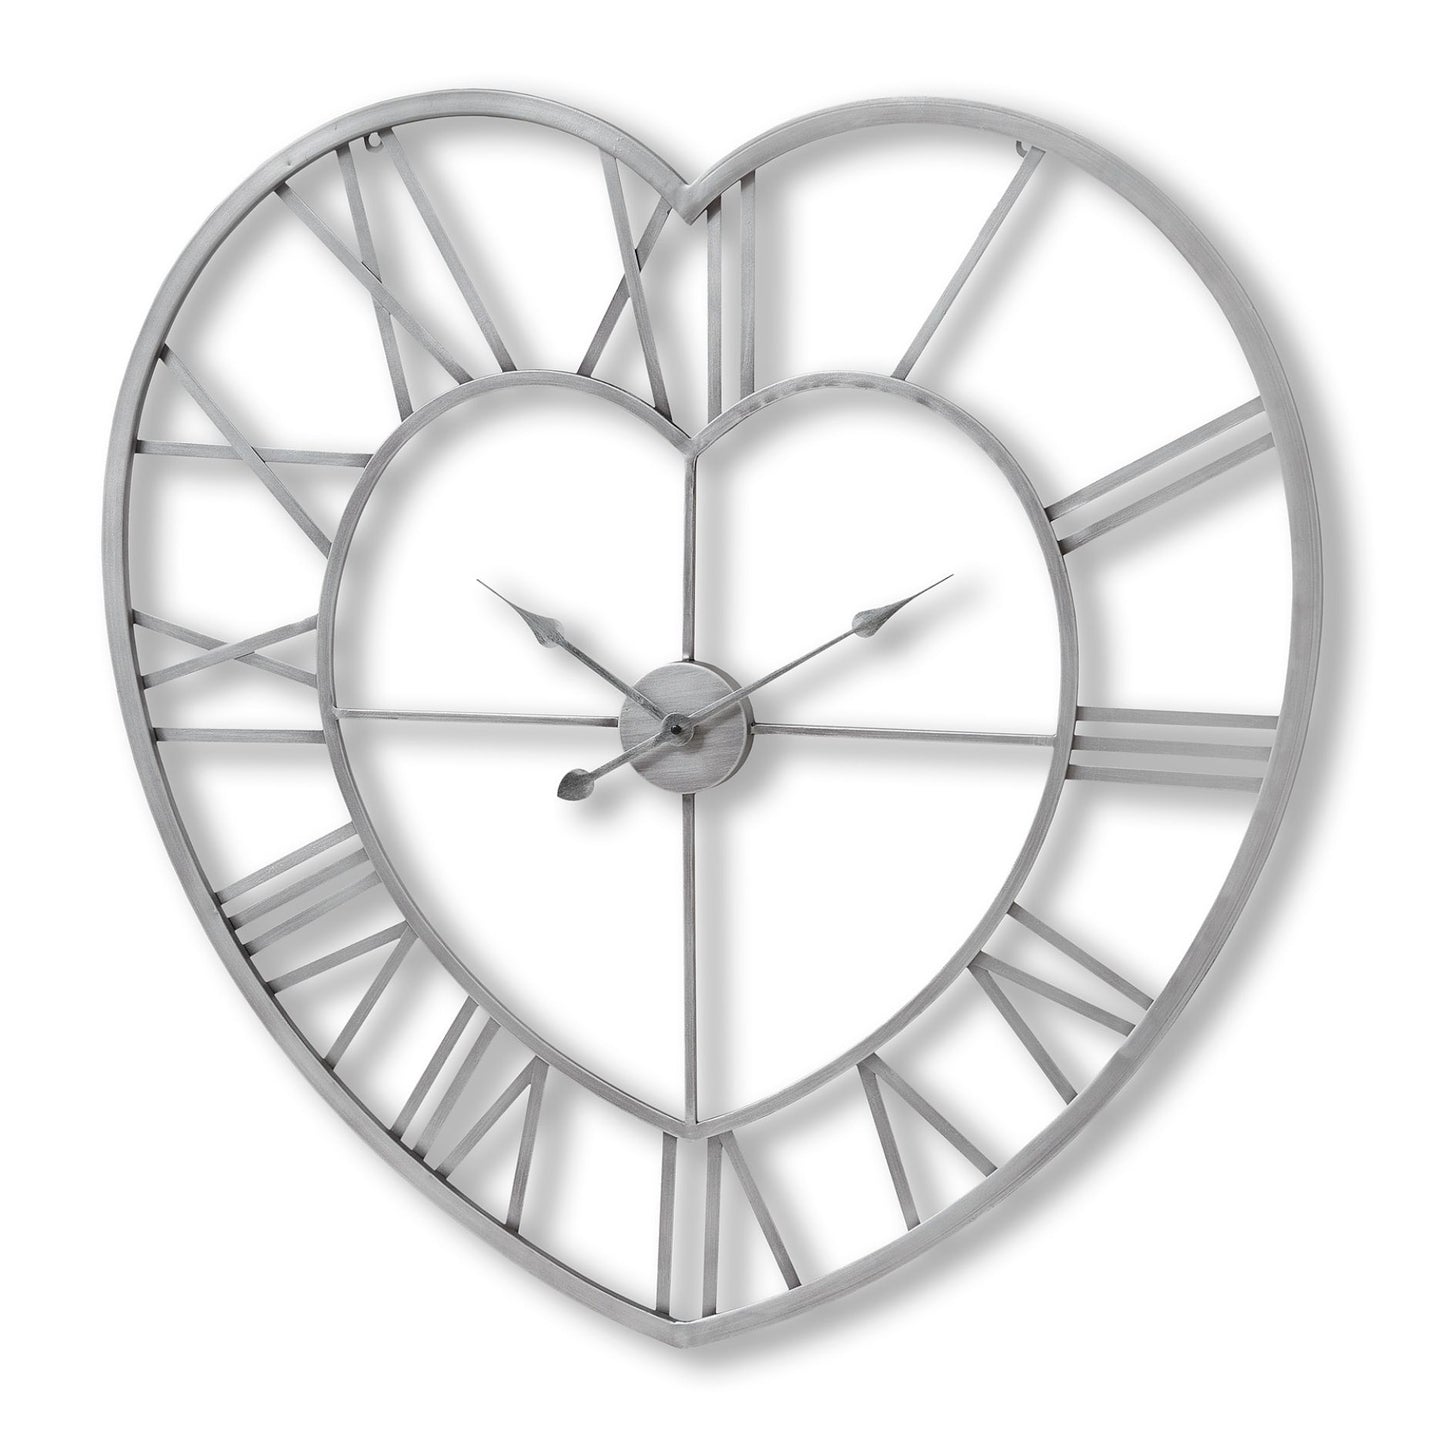 Silver Skeleton Heart Wall Clock